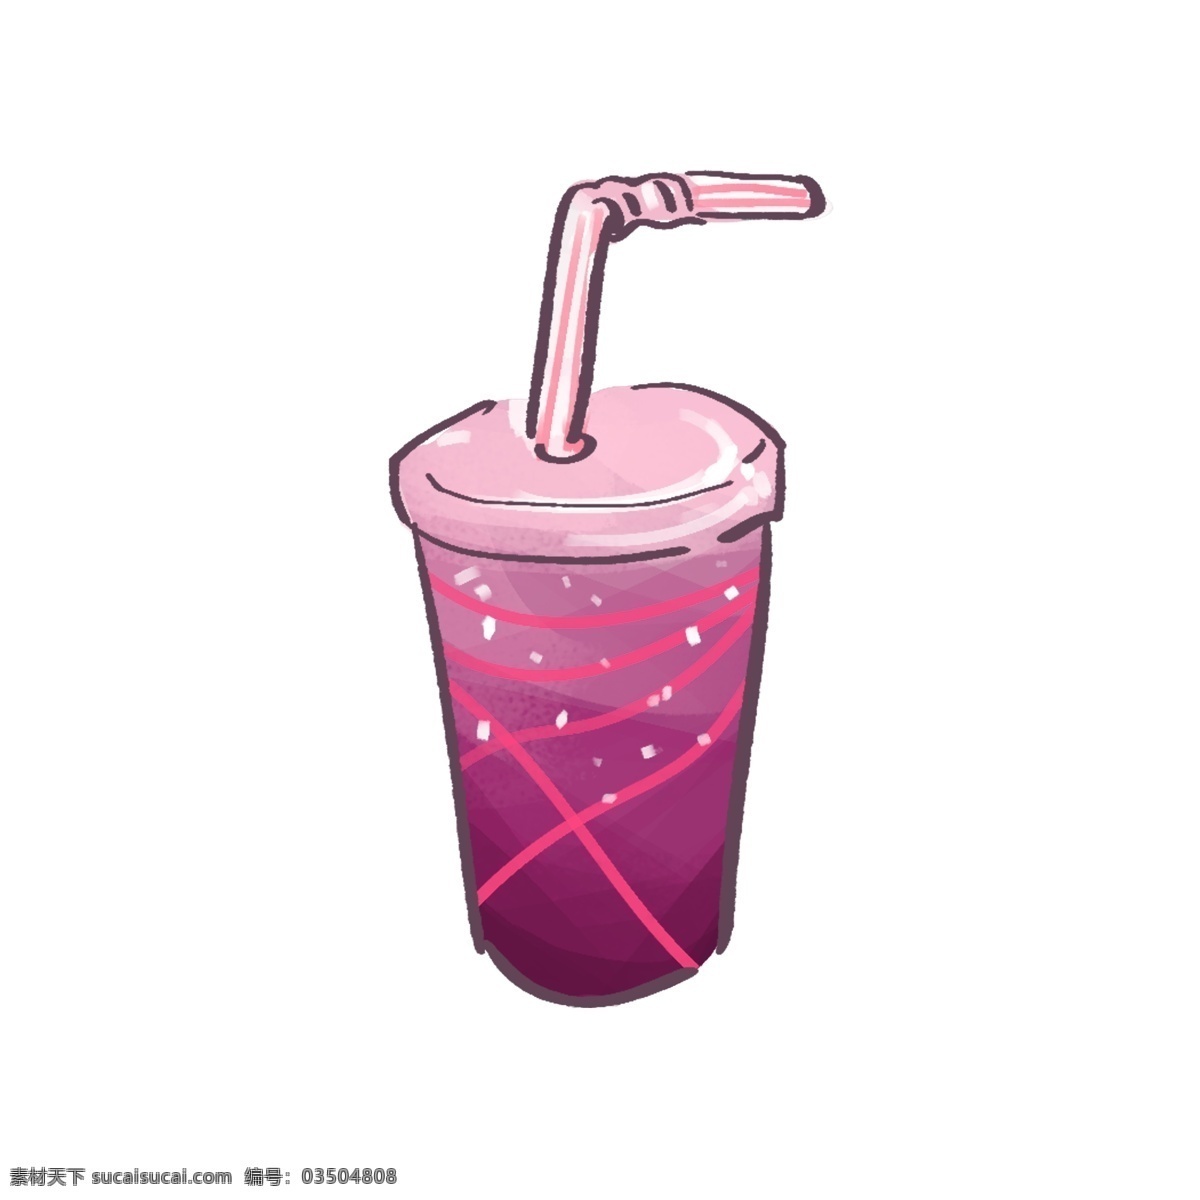 夏日 清新 季节 冷饮 夏天 夏季 蔓越莓 玫红 饮料 饮品 吸管 奶茶 果汁 条纹 插画